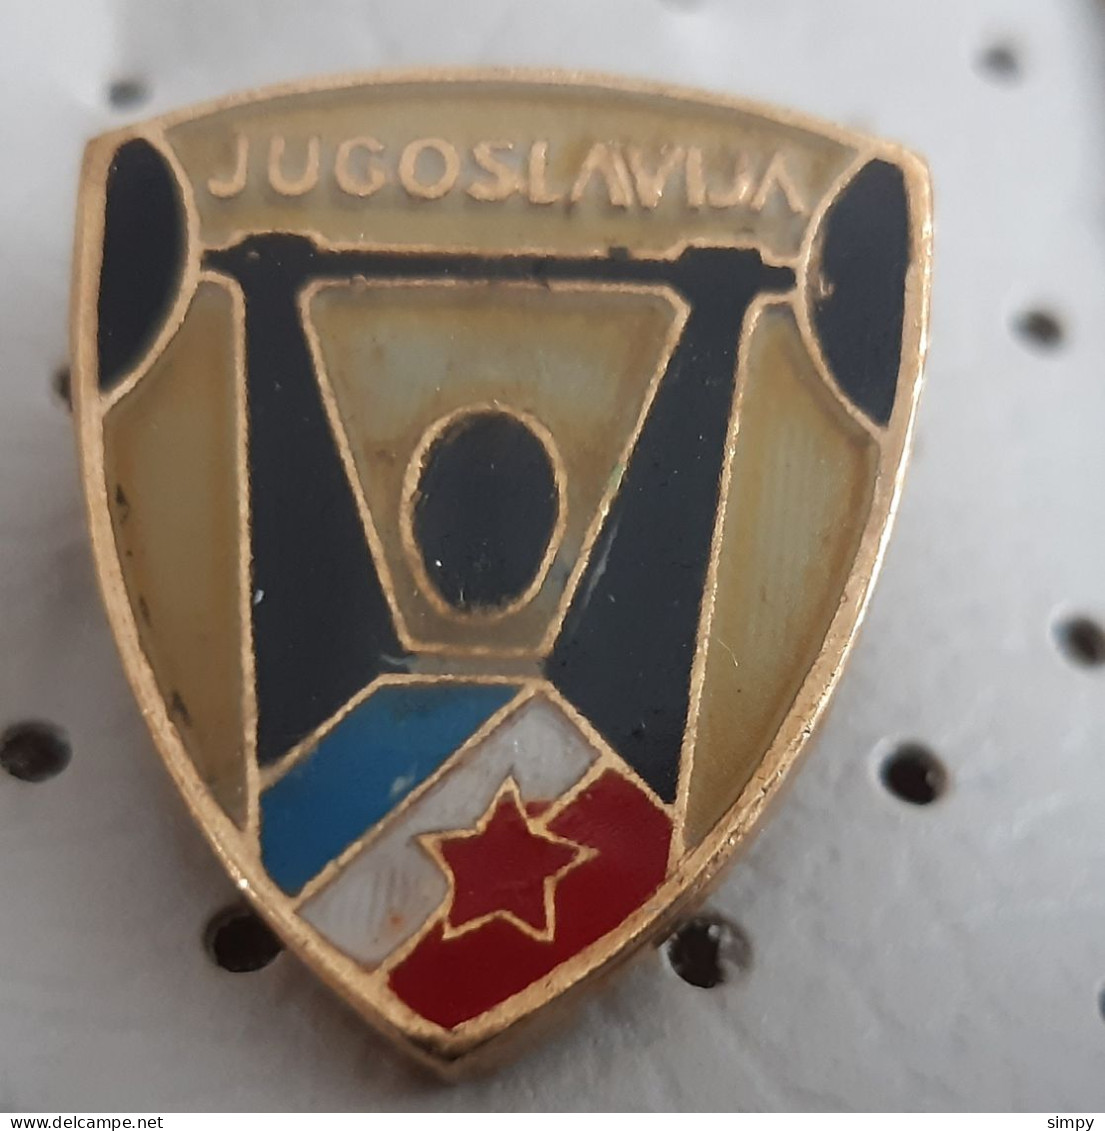 Yugoslavia Weightlifting Federation Vintage Pins - Halterofilia